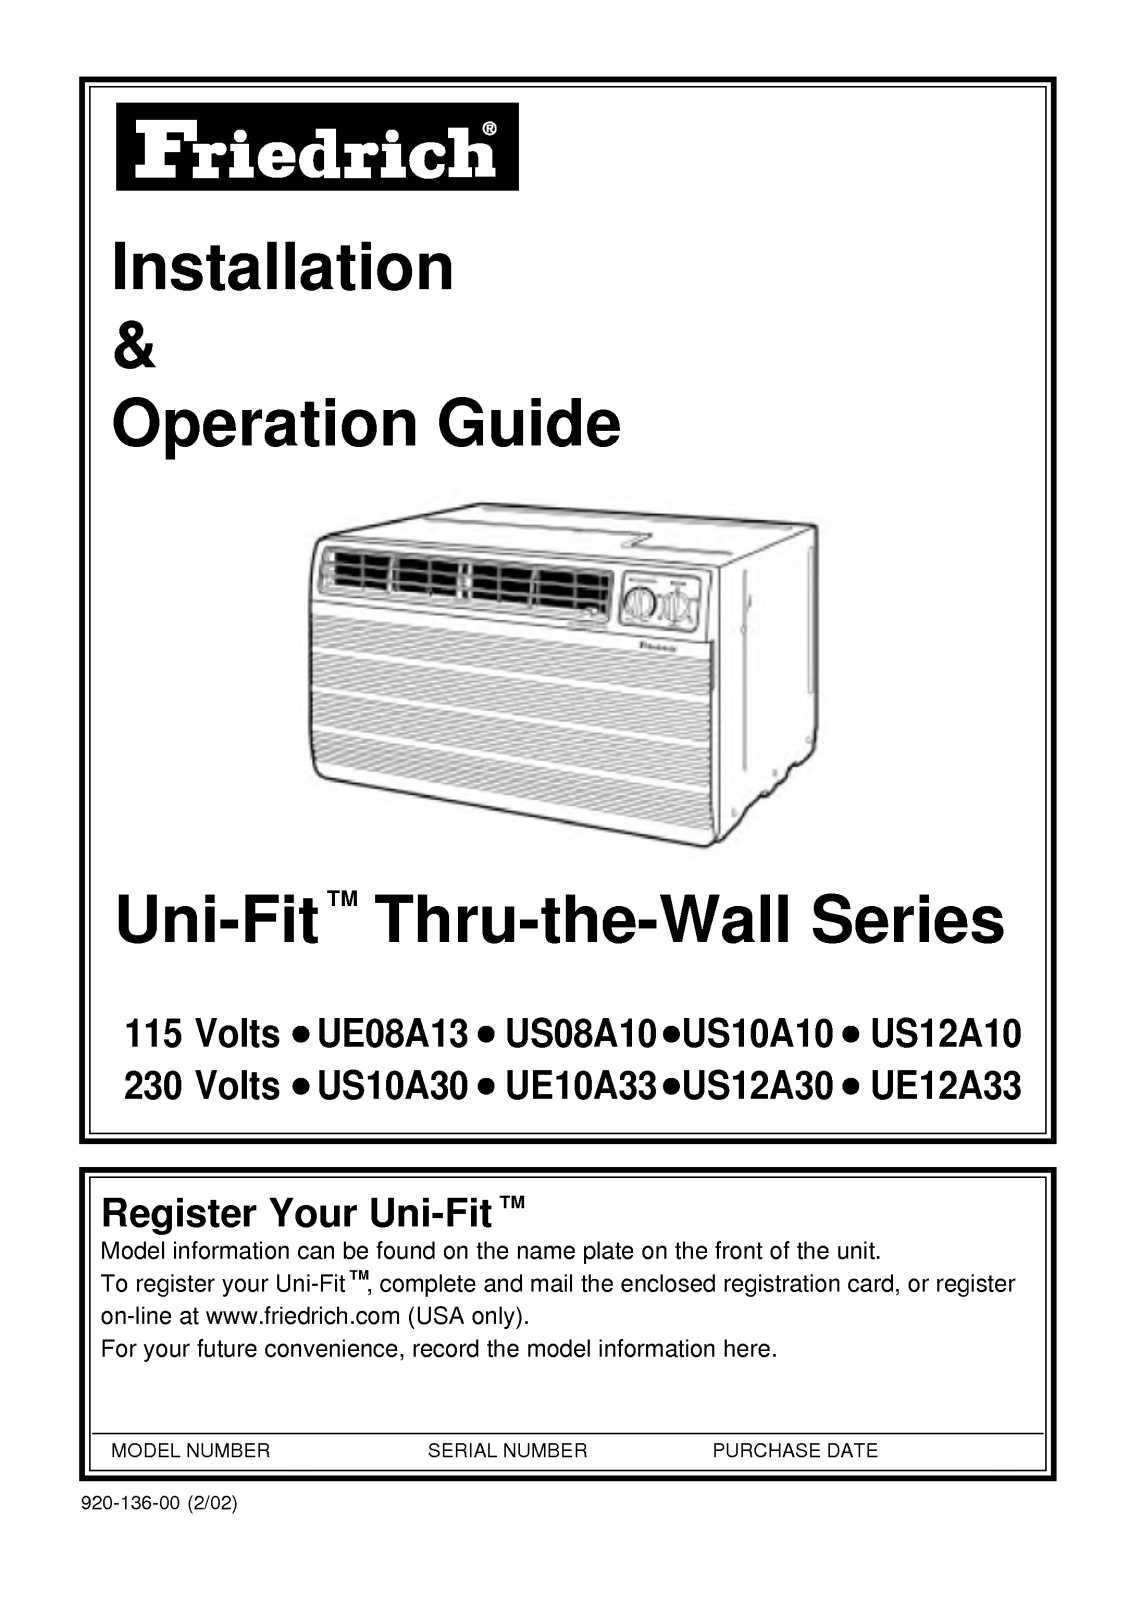 LG US12A10, UE10A33, US08A10, UE12A33, US12A30 Manual